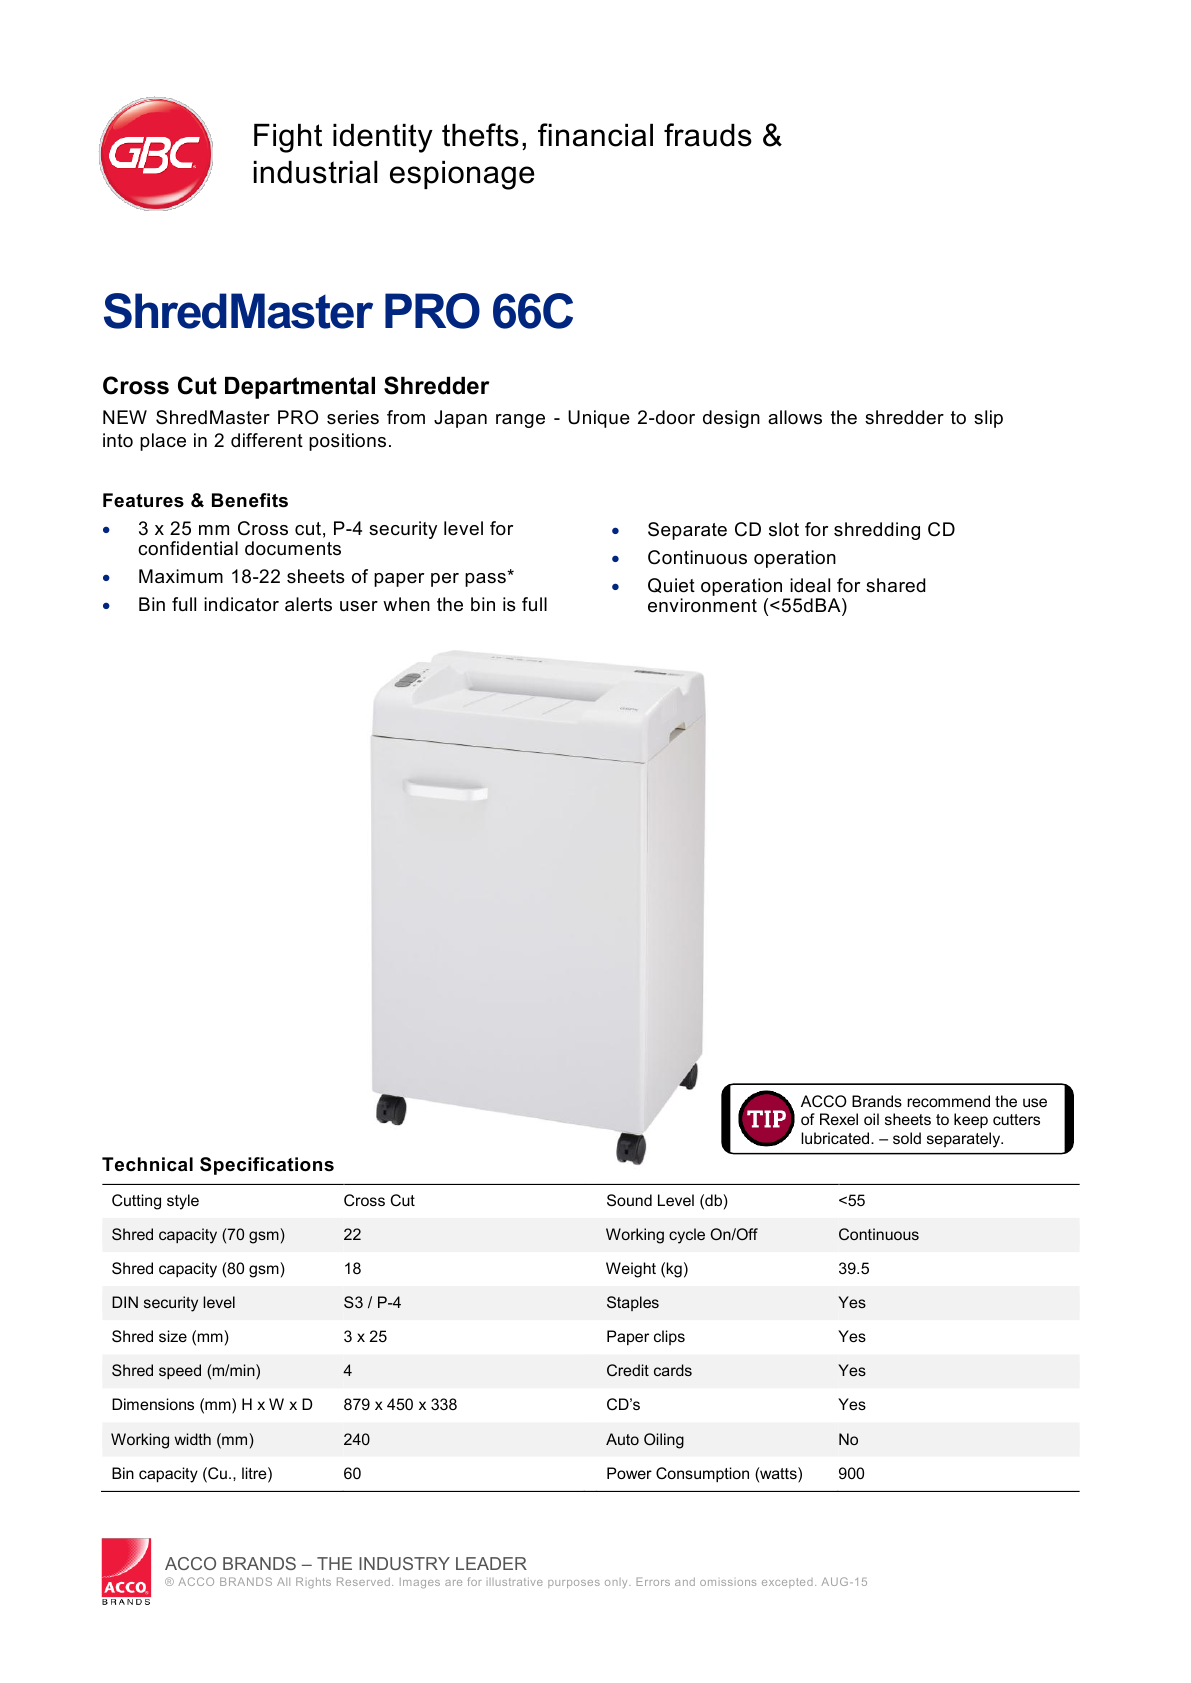 gbc-shredmaster-pro-66c-3x25mm-2.png